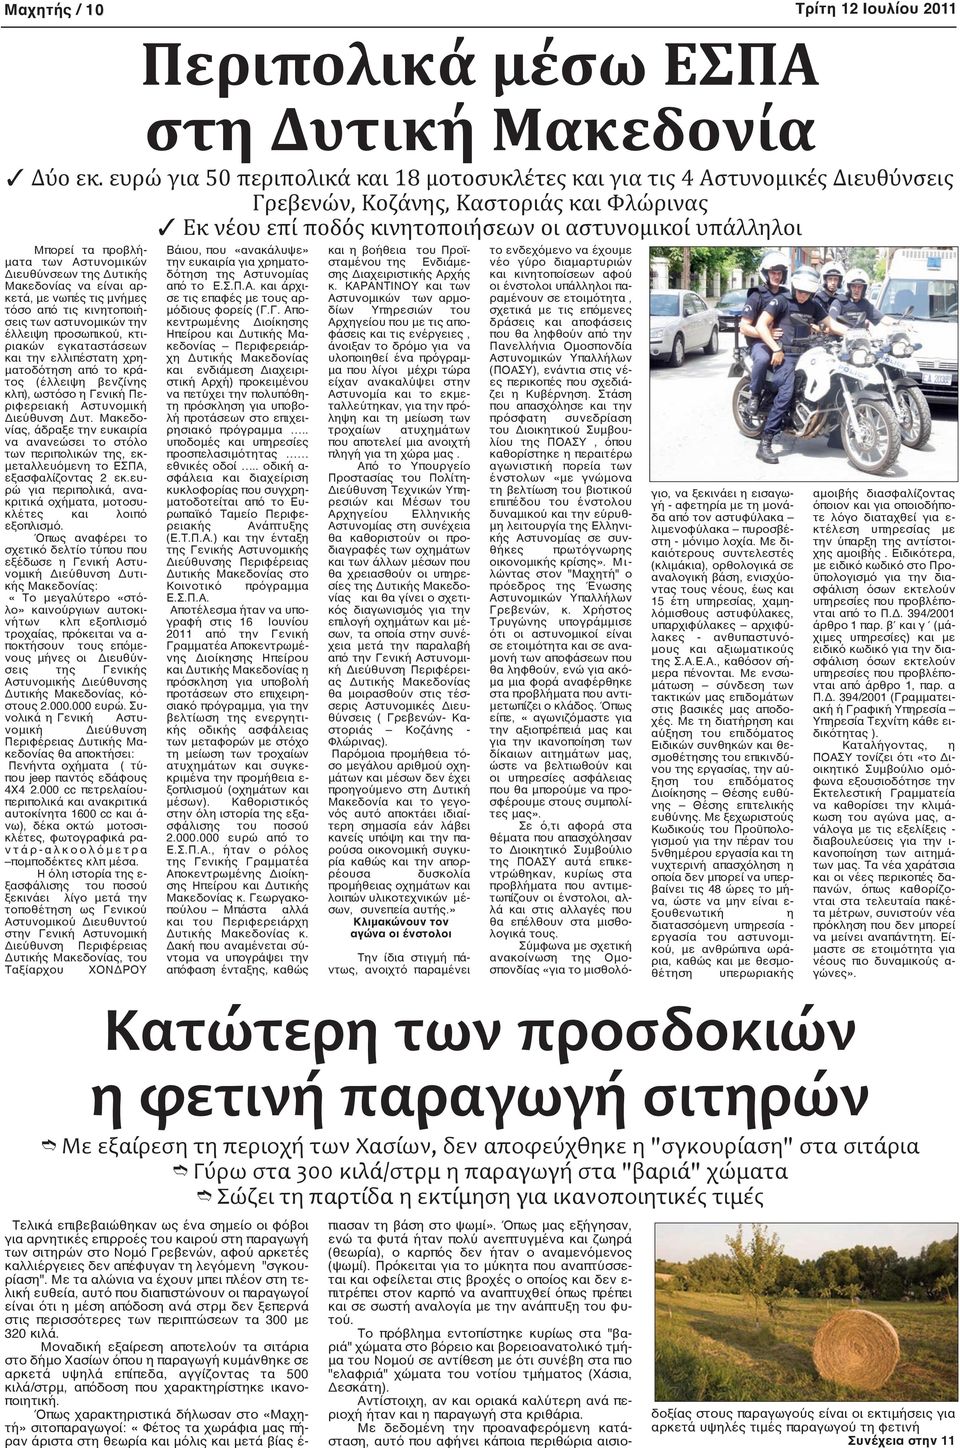 προβλήματα των Αστυνομικών Διευθύνσεων της Δυτικής Μακεδονίας να είναι αρκετά, με νωπές τις μνήμες τόσο από τις κινητοποιήσεις των αστυνομικών την έλλειψη προσωπικού, κτιριακών εγκαταστάσεων και την